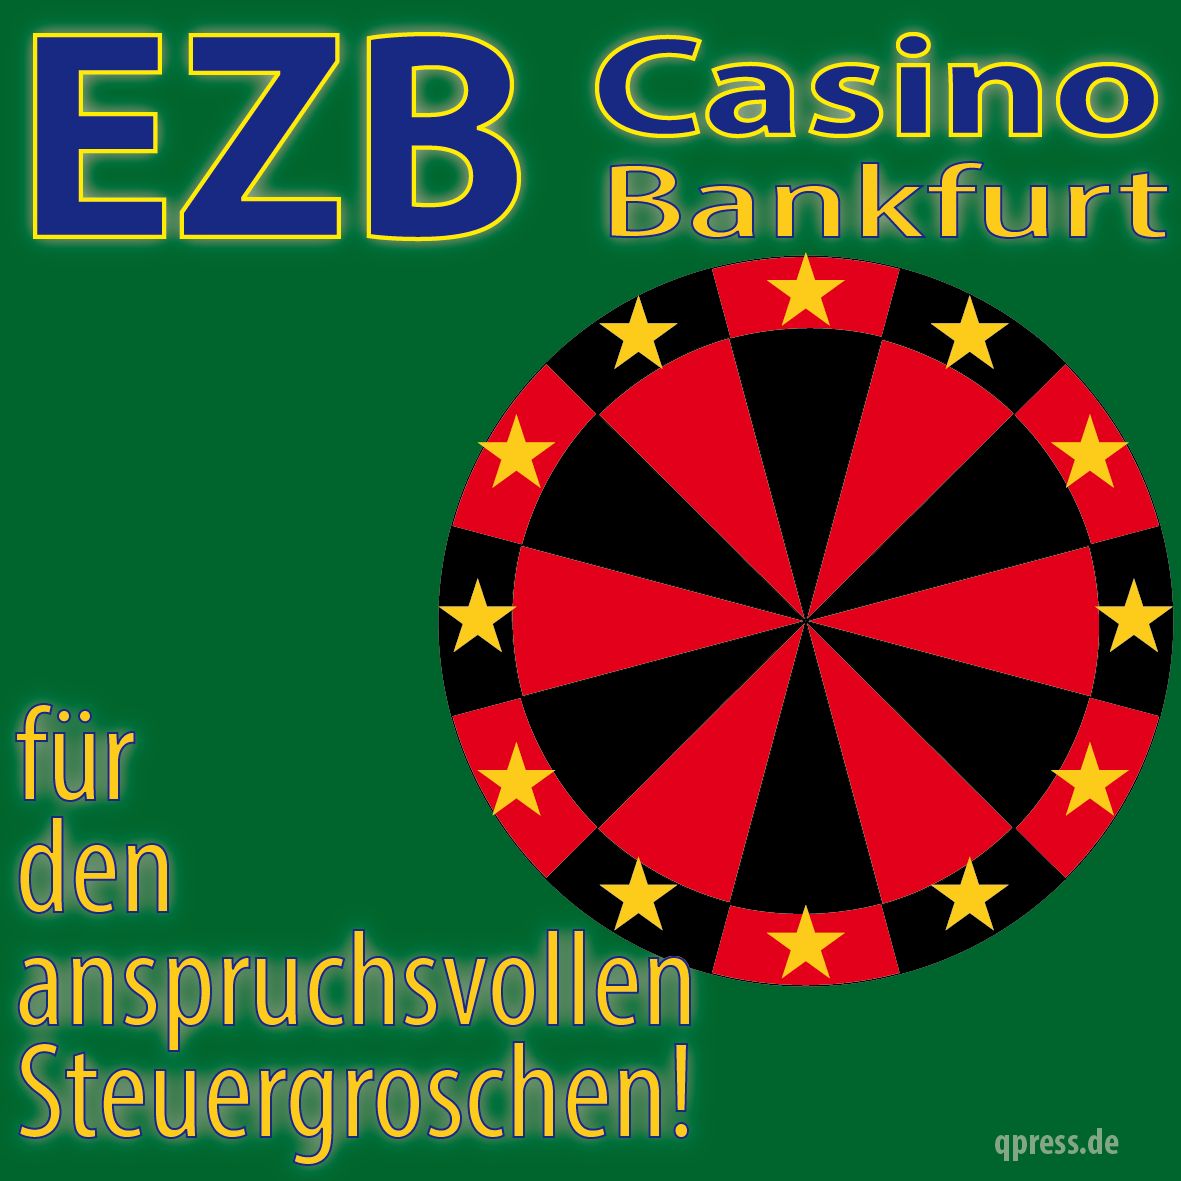 Die EZB ist gefährlicher als jedes Casino